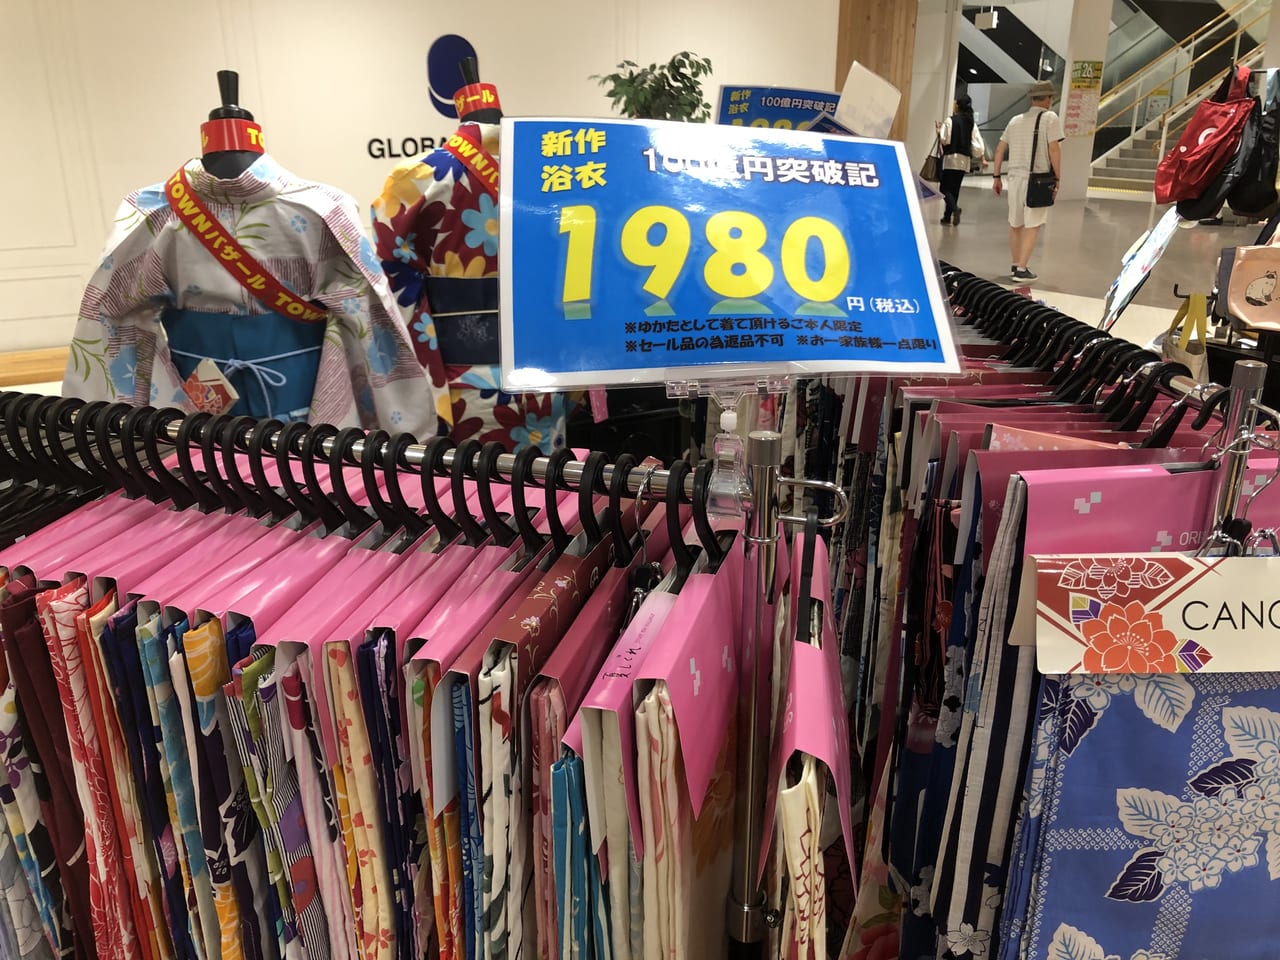 稲沢市 今年の夏は浴衣を着て出かけませんか Bankanで新作浴衣が 1980円 セール開催 浴衣でパーティ も企画中ですよ 号外net 稲沢市 清須市